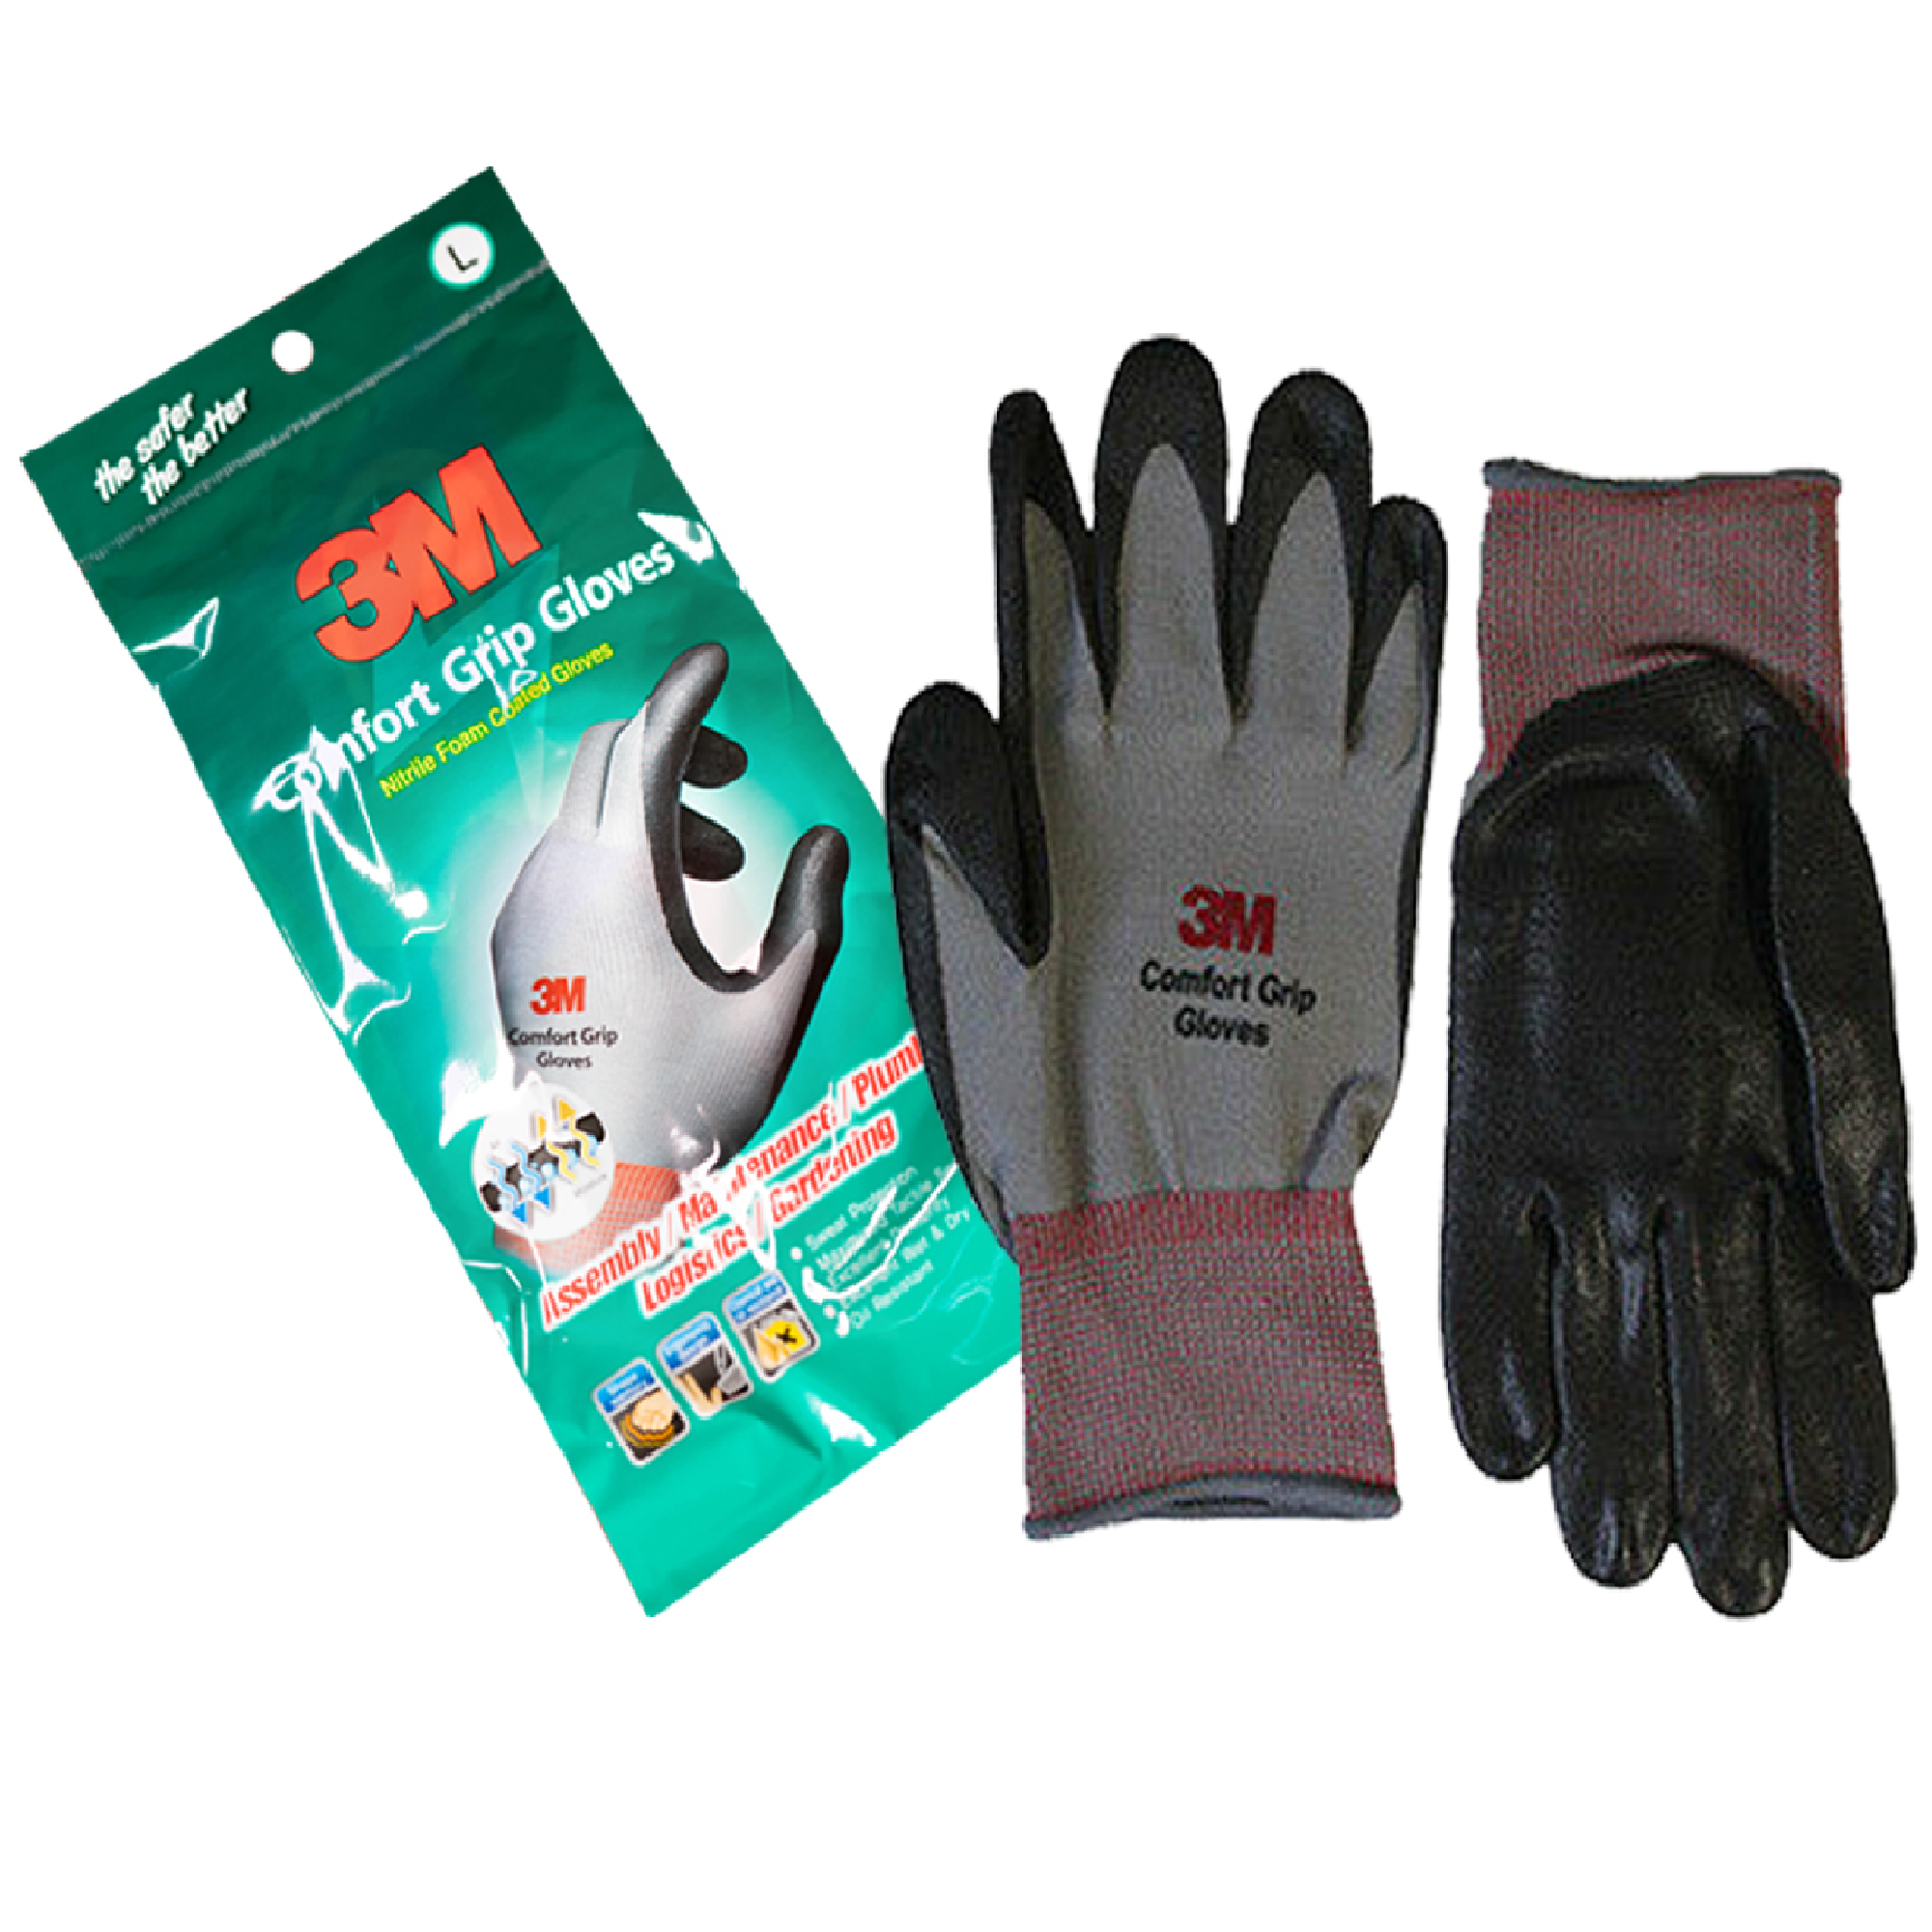 3M CG-GU COMFORT GRIP Gloves